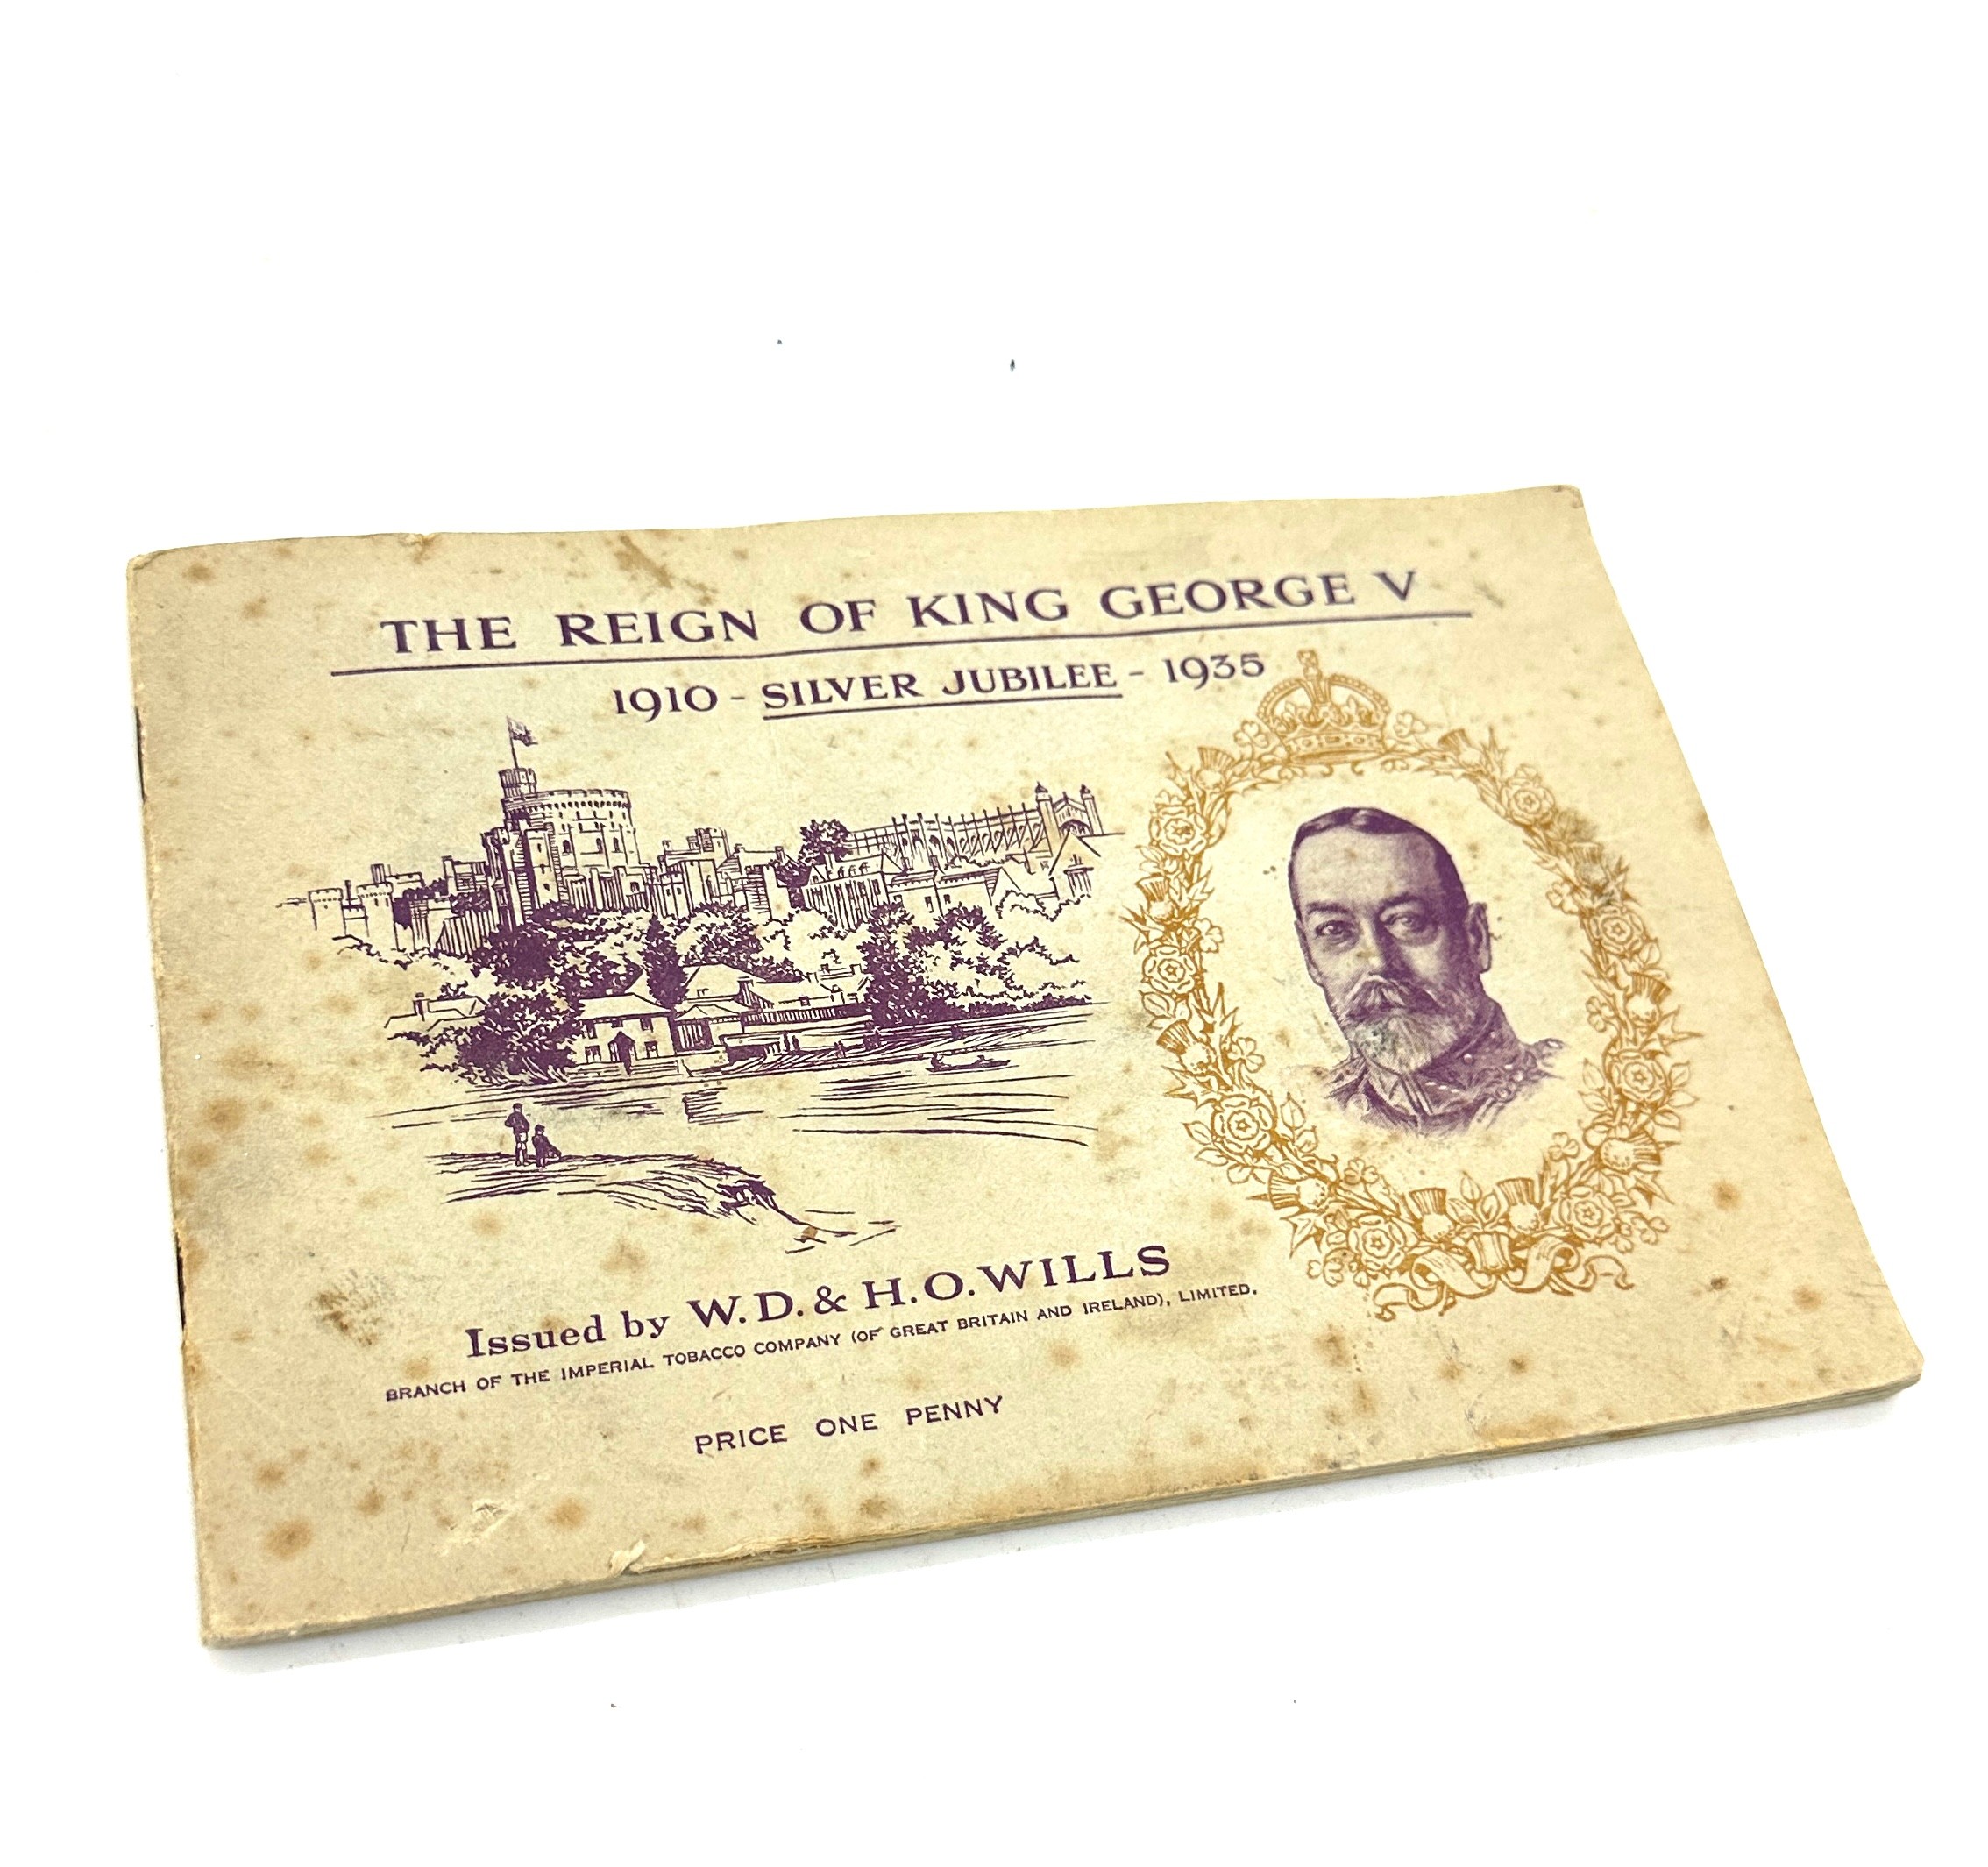 King George V Cigarette cards 1910v